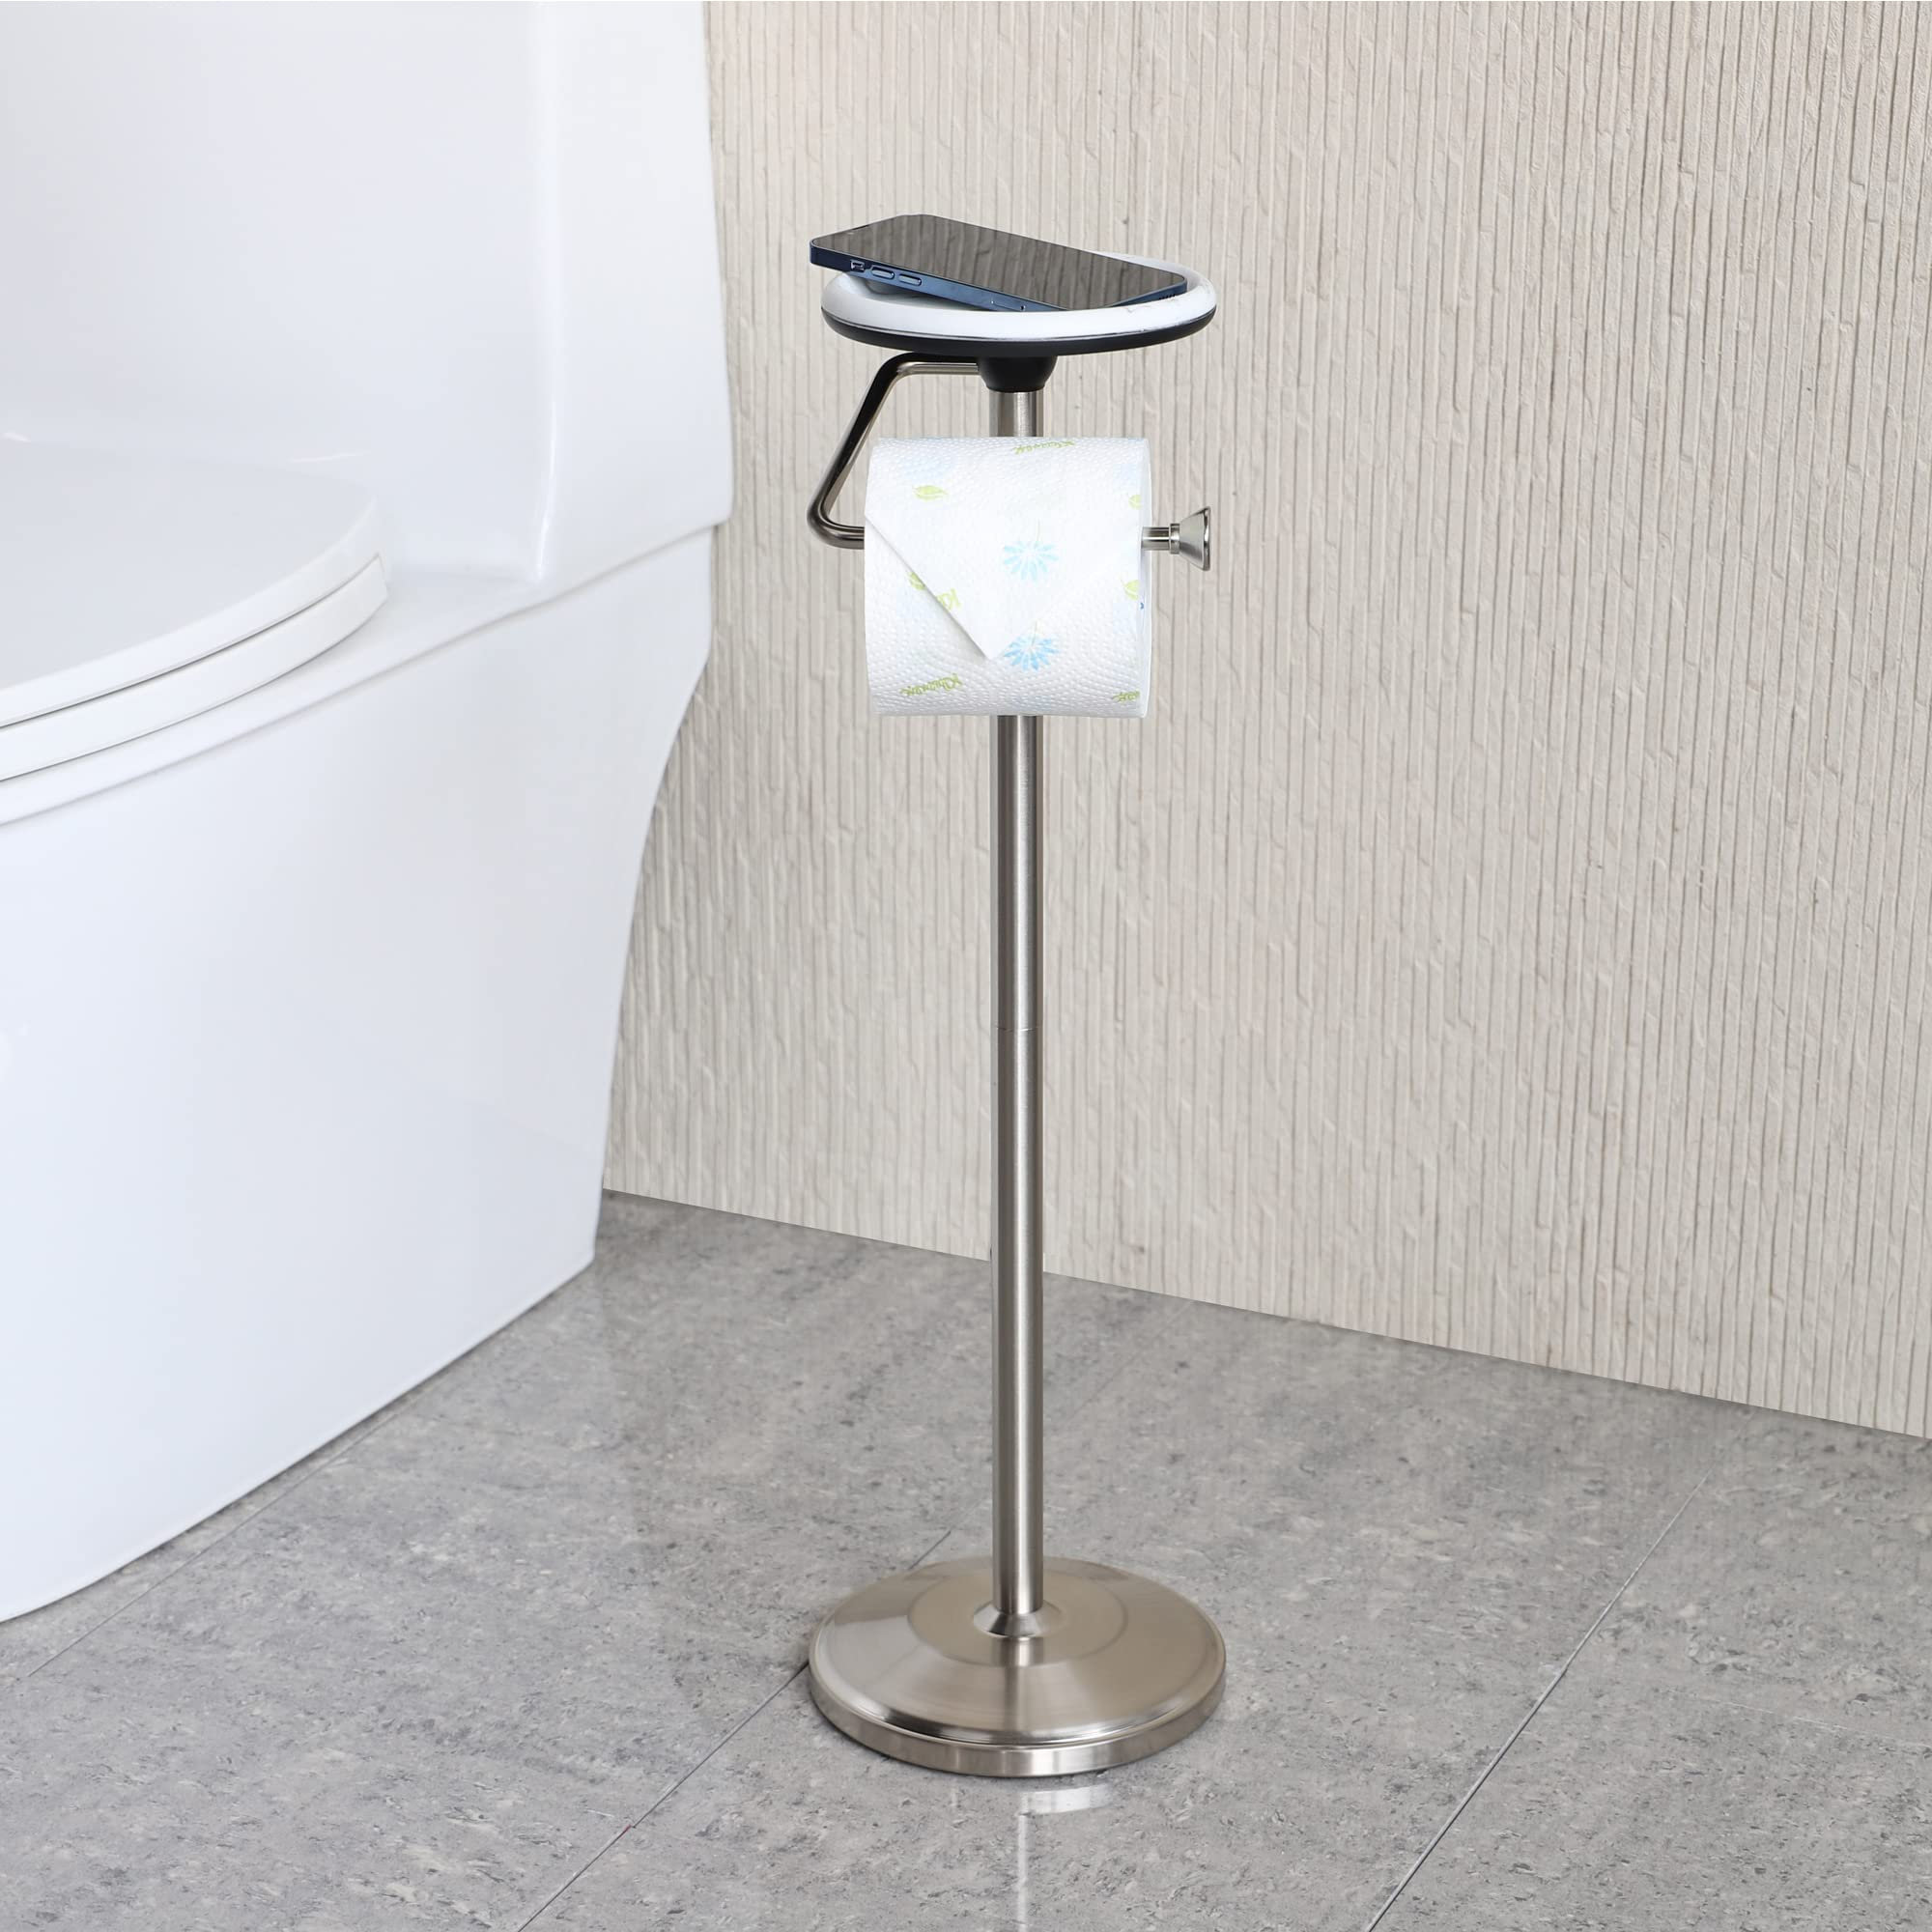 Gardenix Decor B09V28FR83 Freestanding Toilet Paper Holder